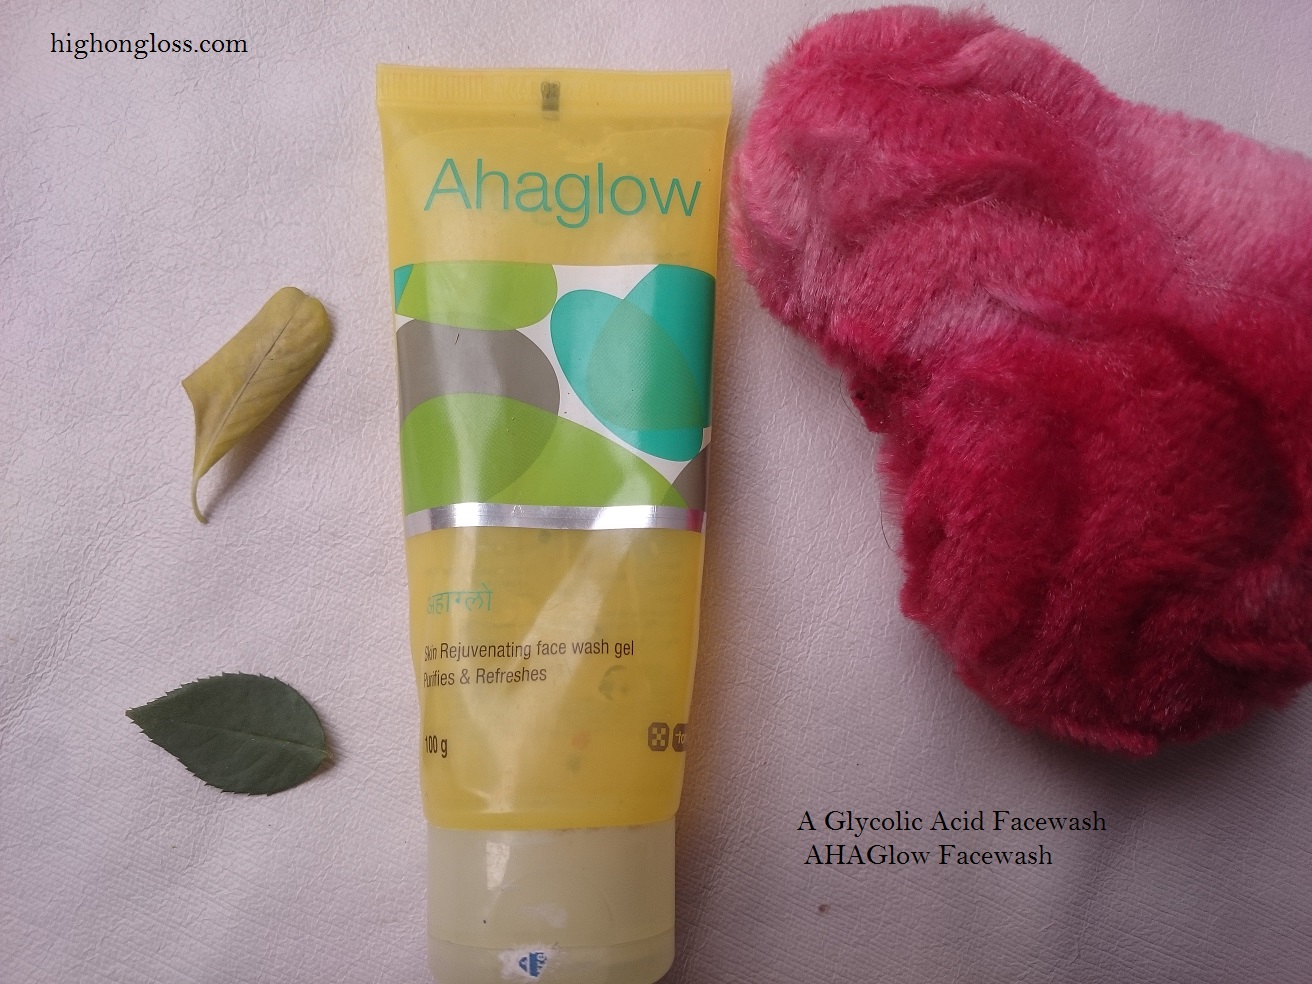 ahaglow-facewash